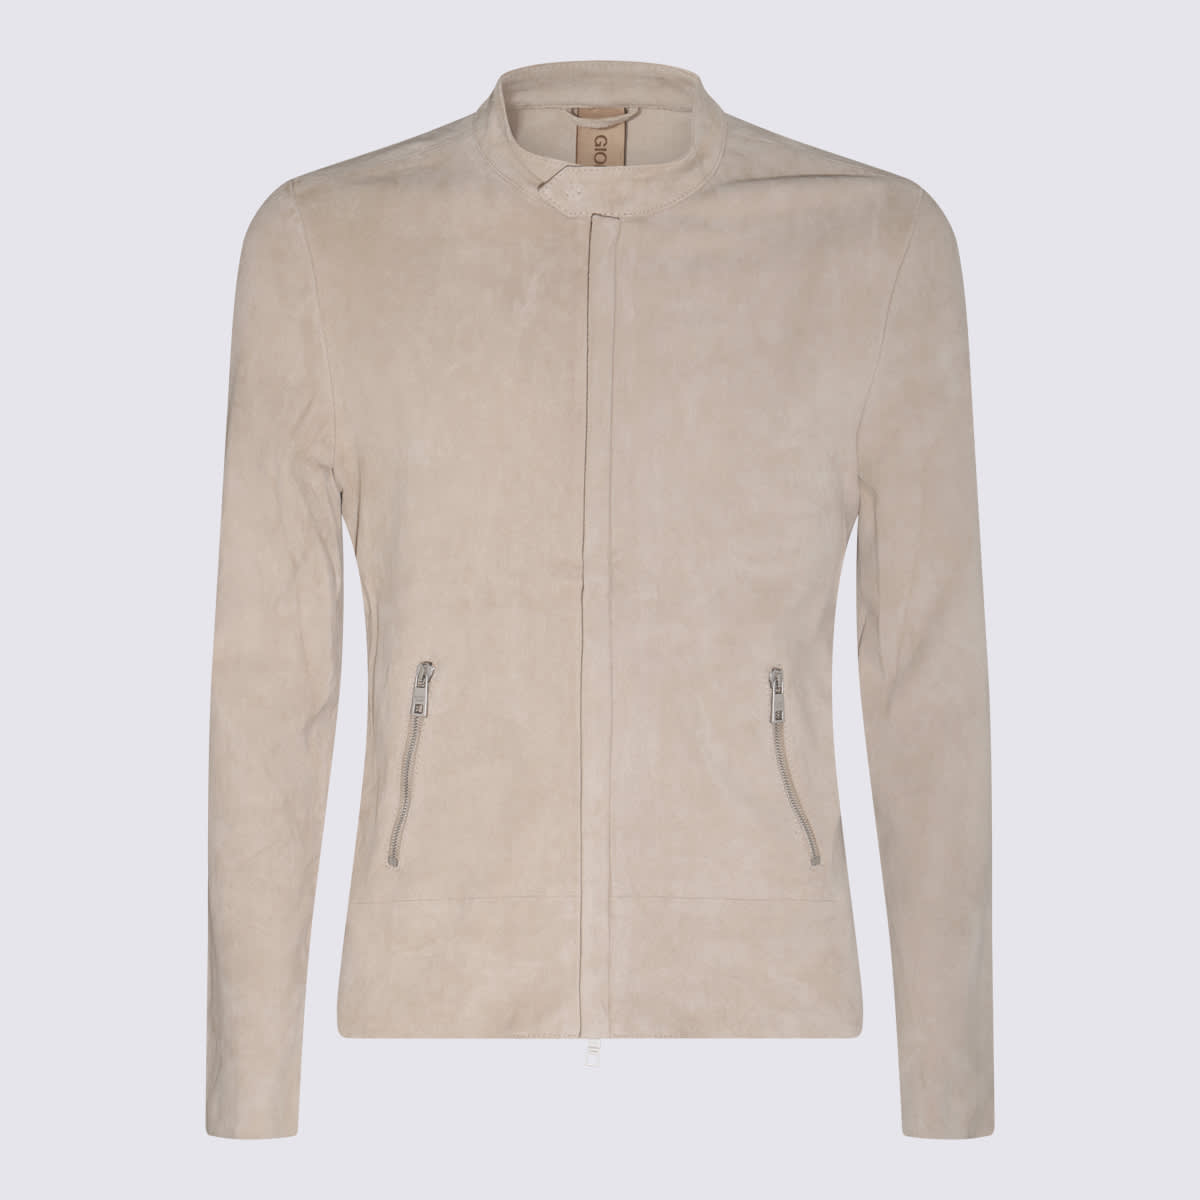 Shop Giorgio Brato Chalk White Leather Jacket